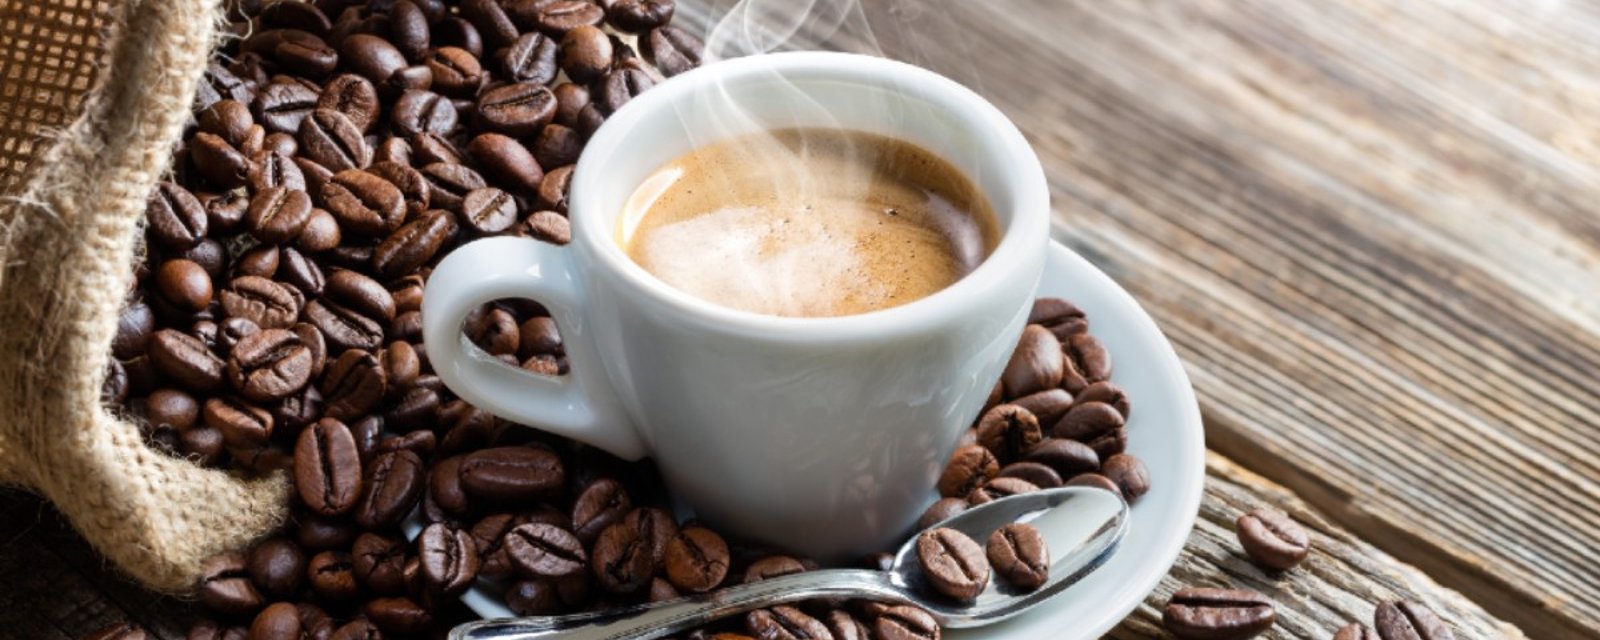 La caféine favorise les achats impulsifs, selon une étude